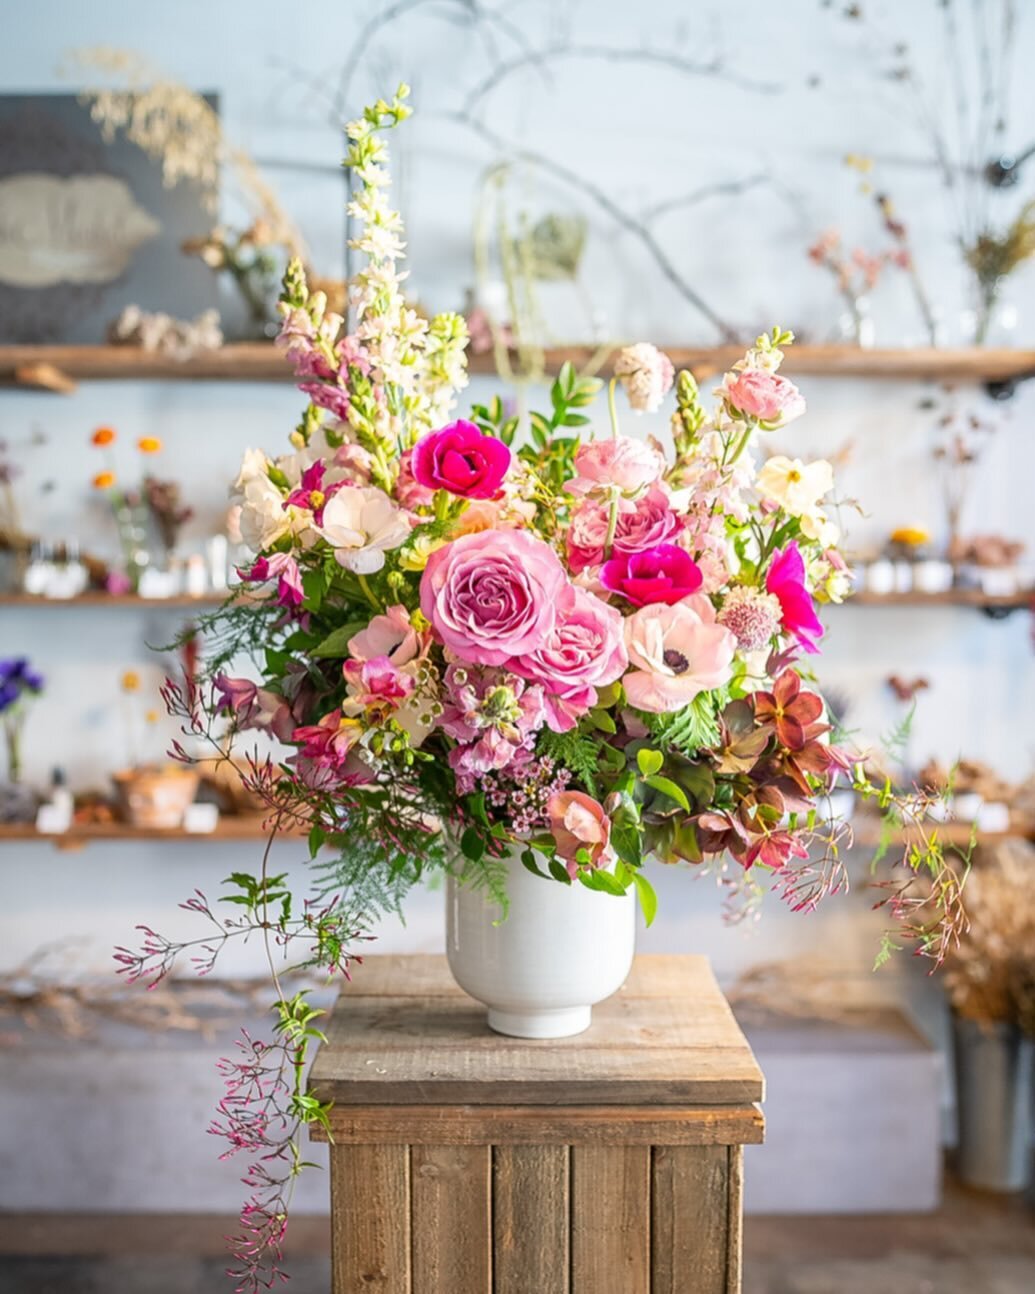 Brunching with blooms 🩷

#flowers #flowershop #florist #pink #flowerstagram #spring